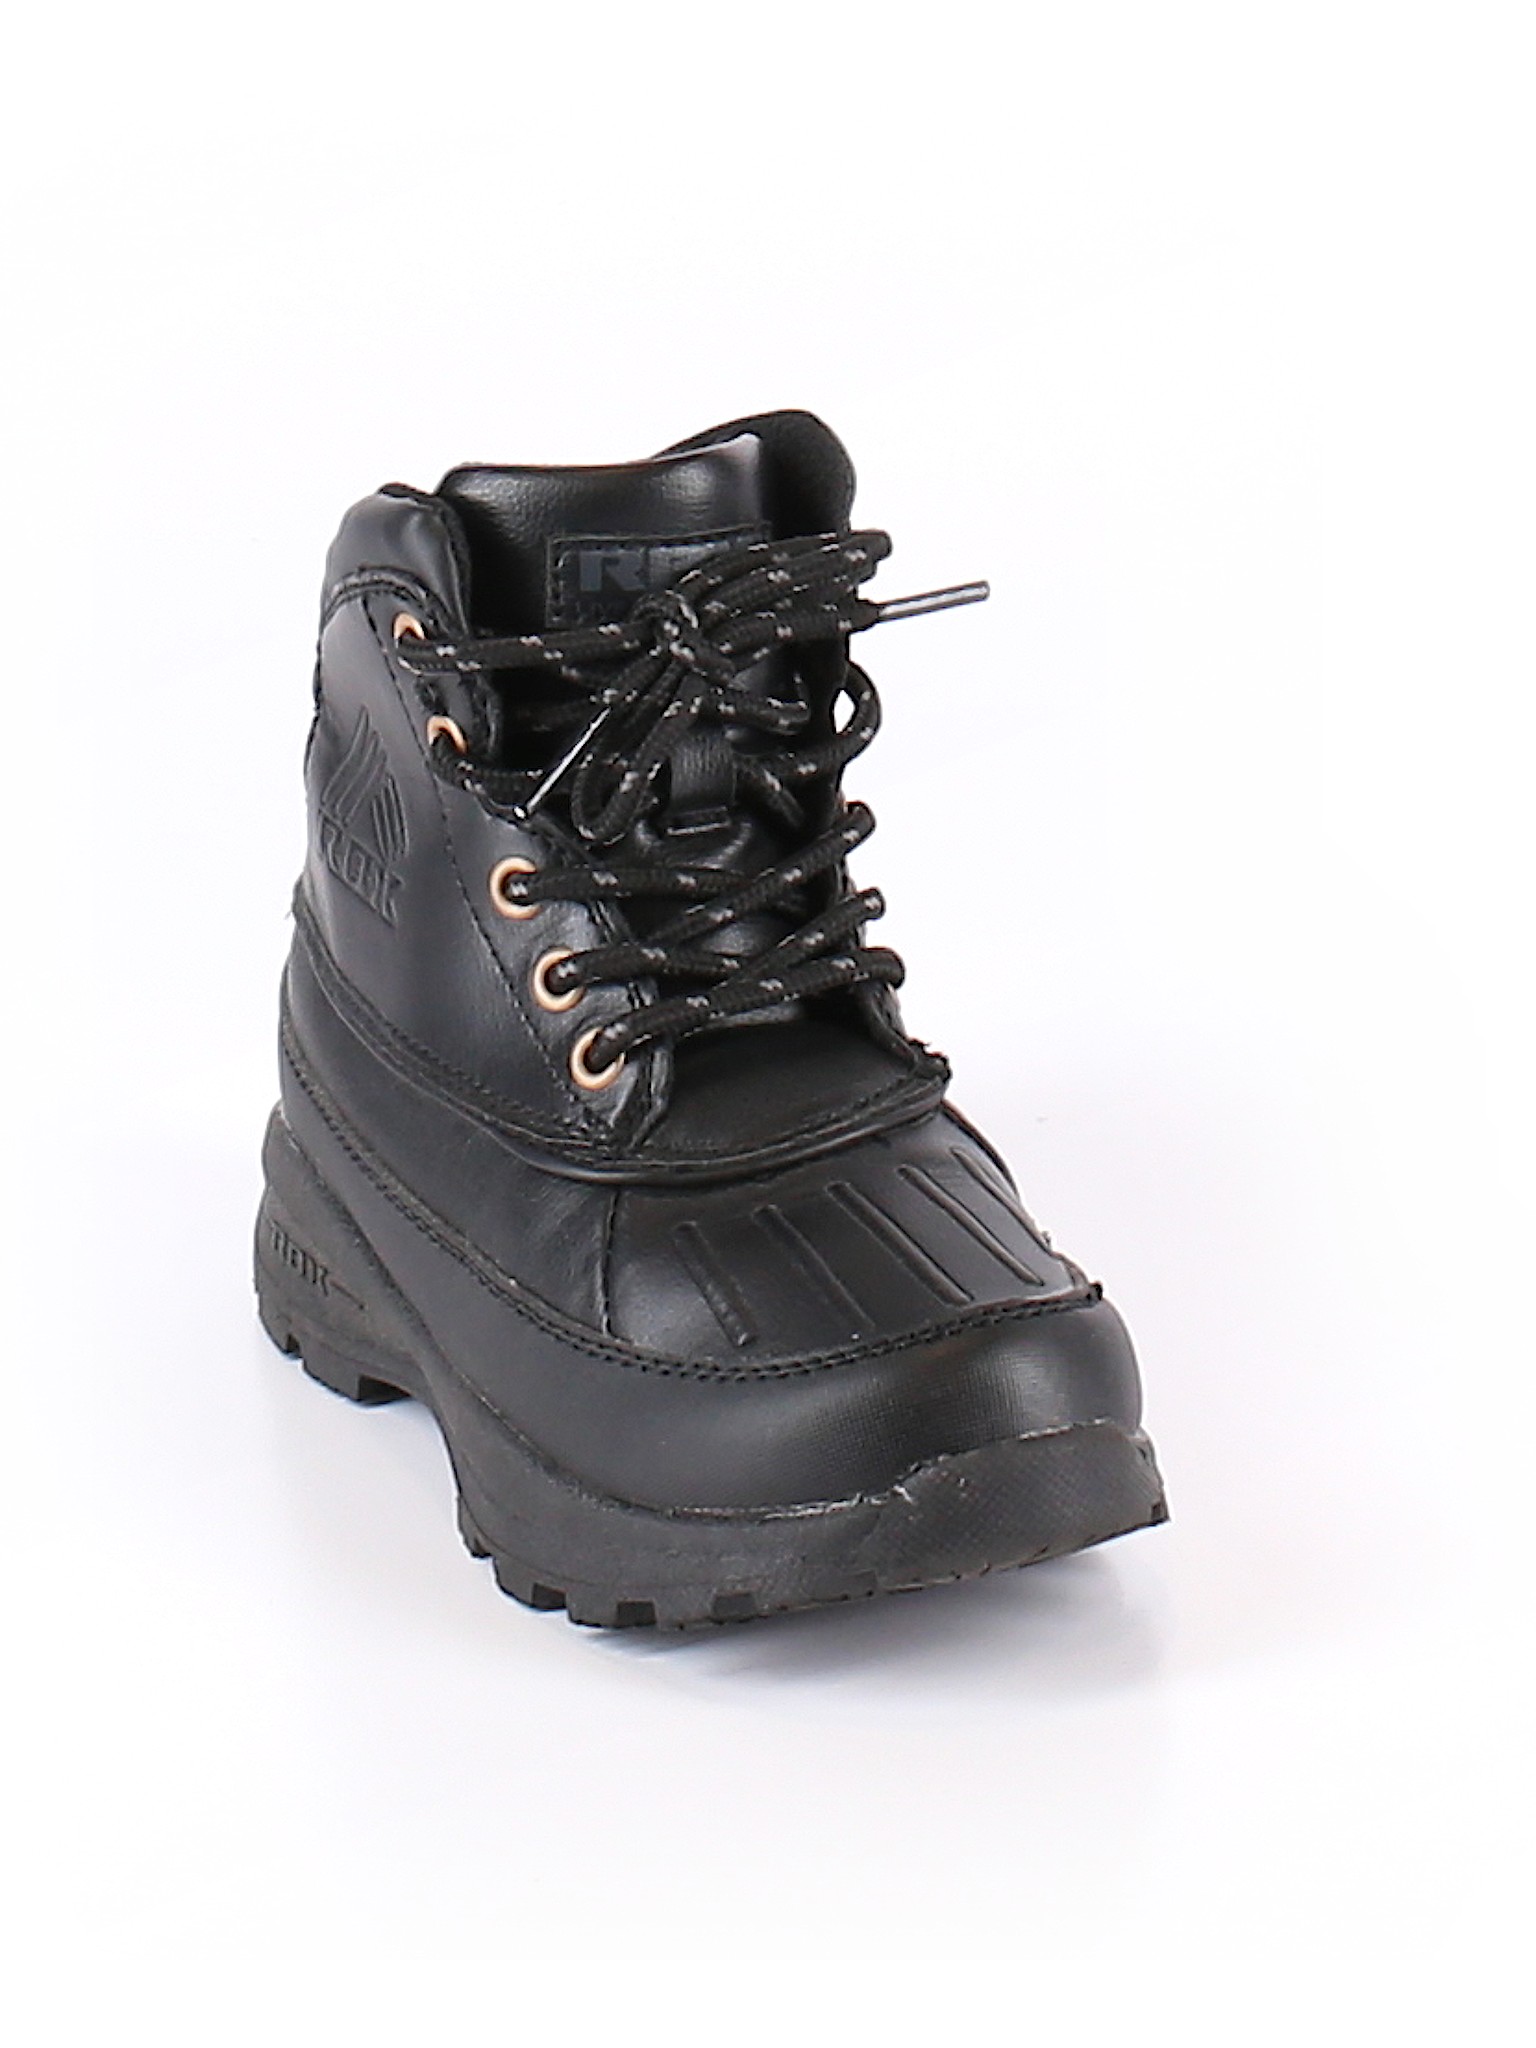 Rbx Solid Black Boots Size 11 1 2 69 Off Thredup - rbx boots com roblox